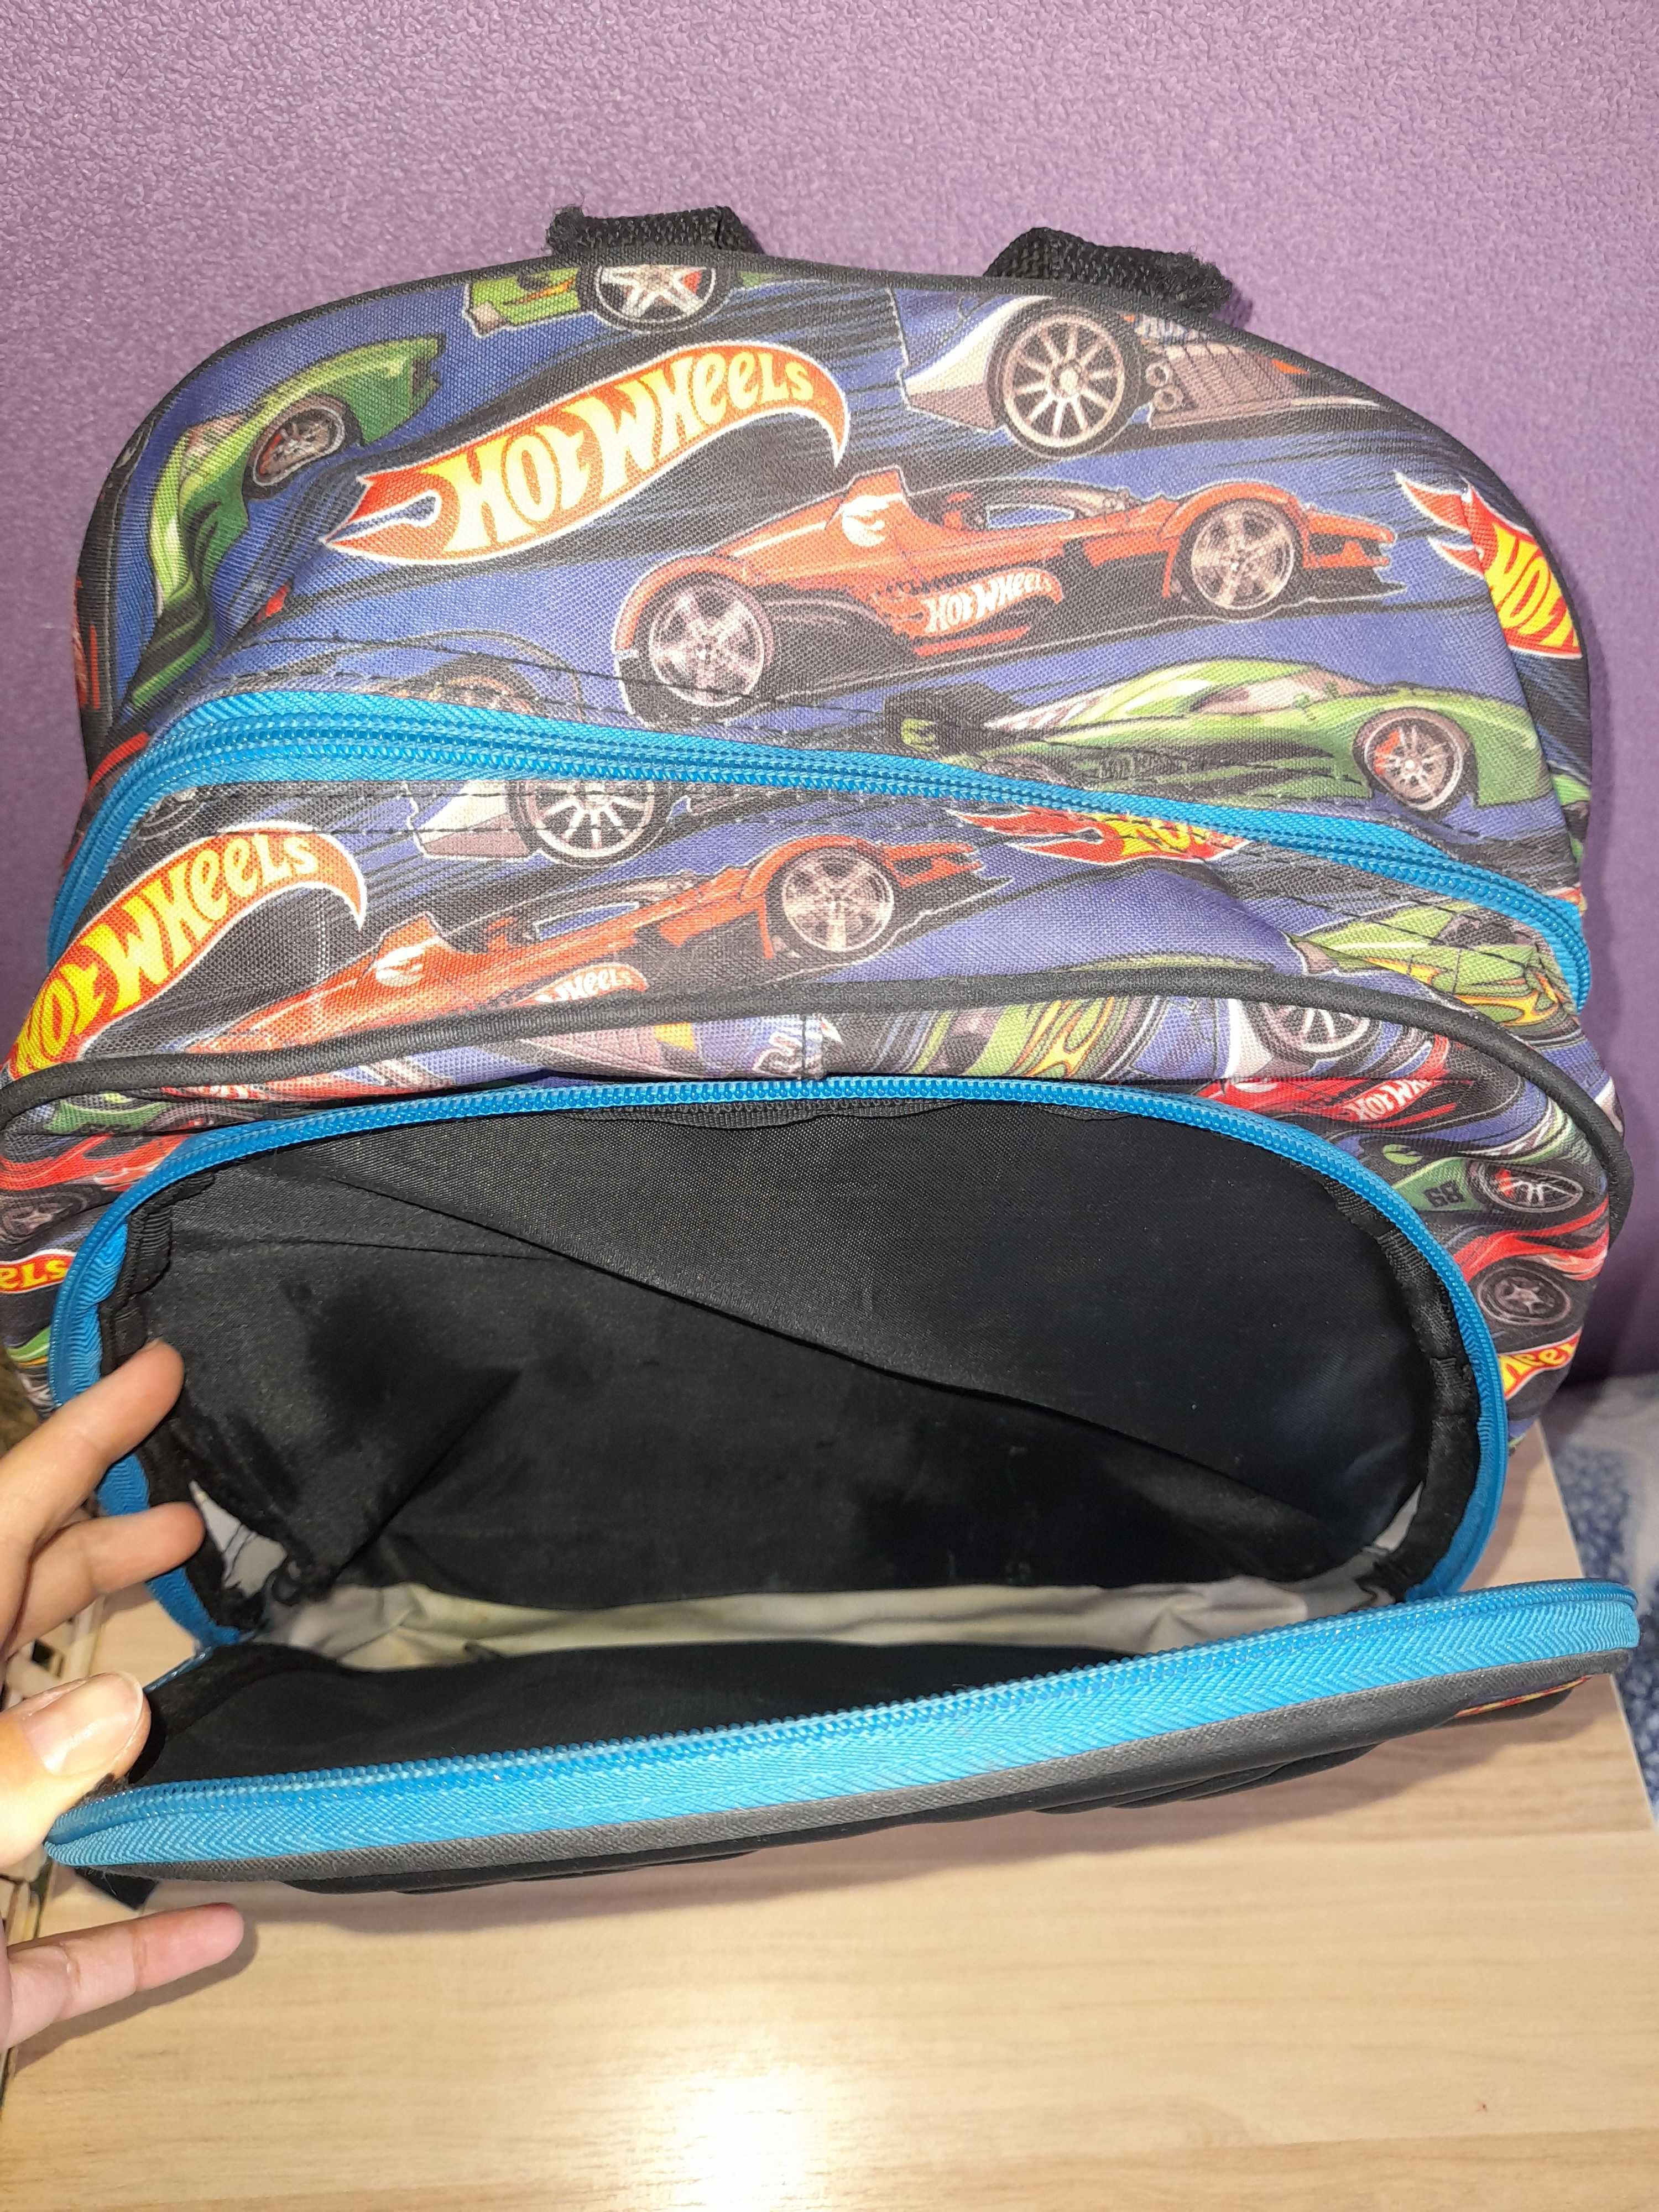 Школьный качественный рюкзак в отличном состоянии!